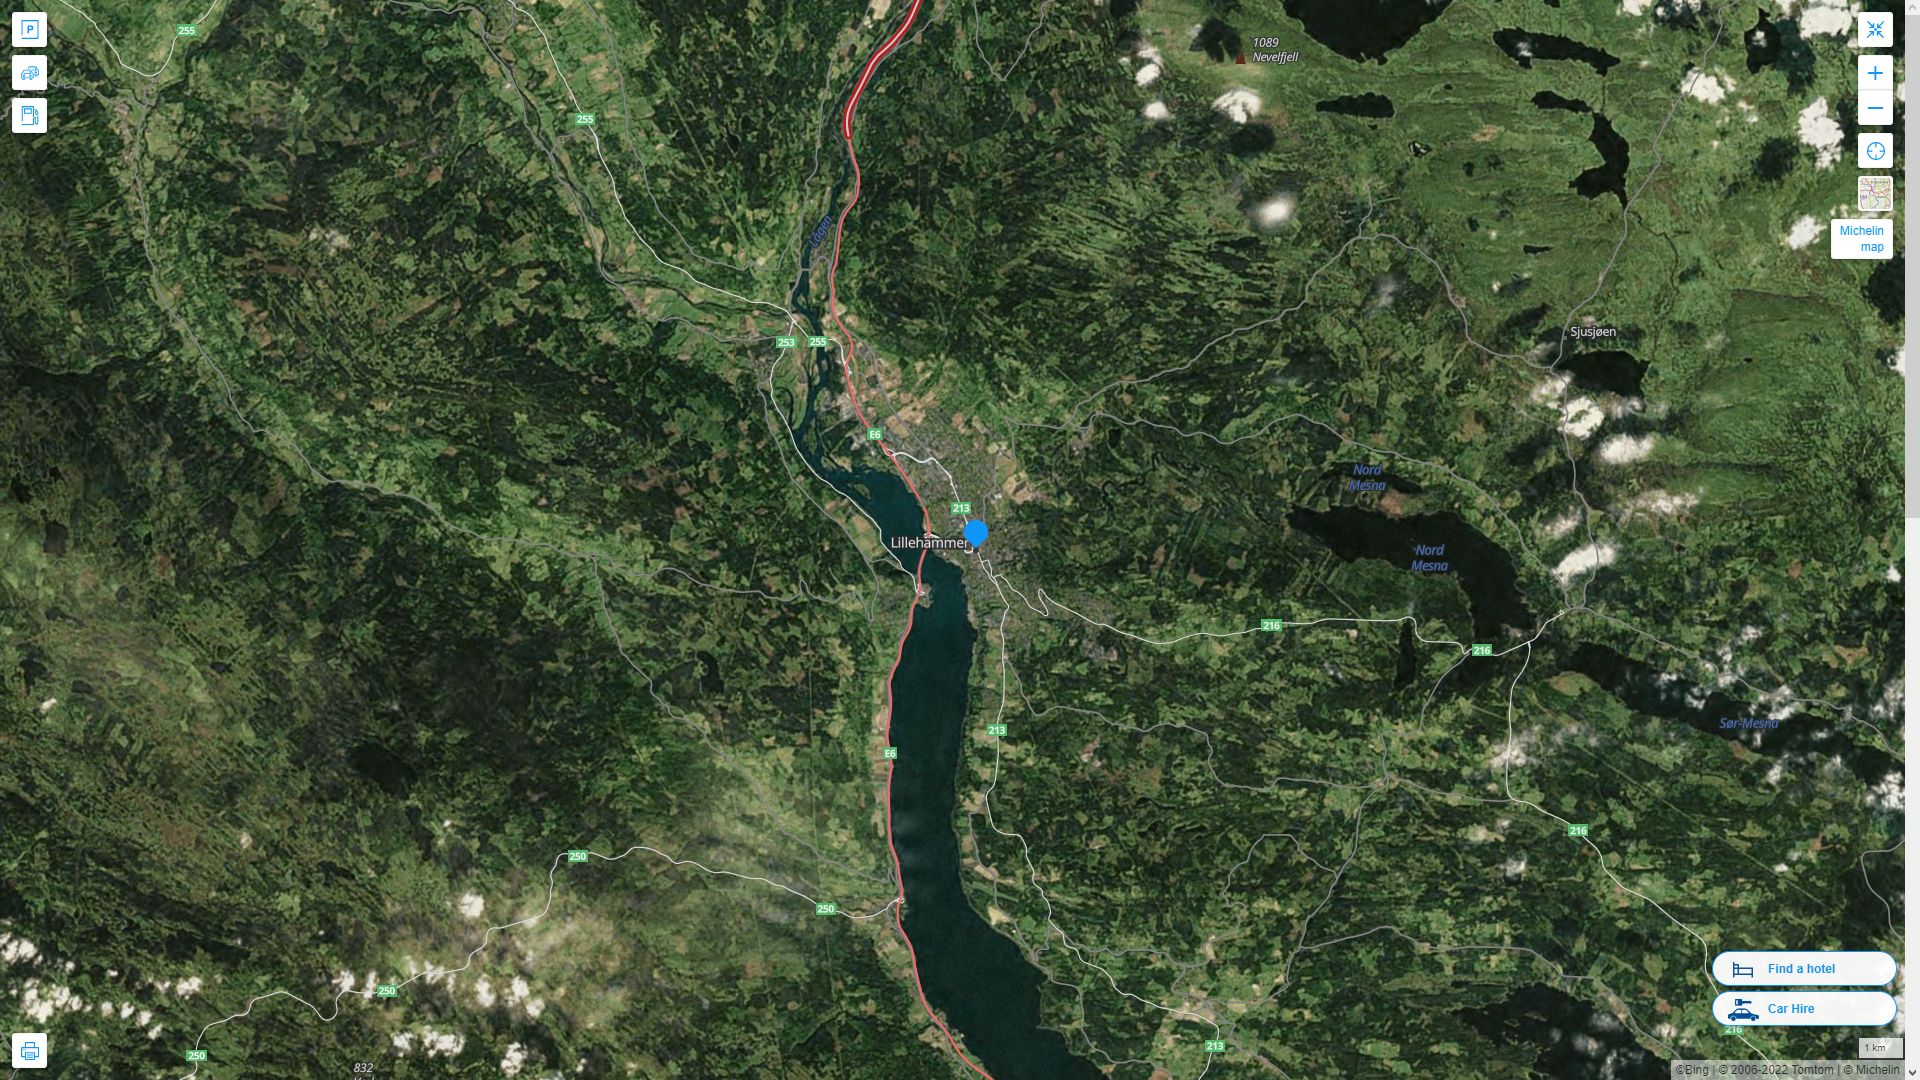 Lillehammer Norvege Autoroute et carte routiere avec vue satellite